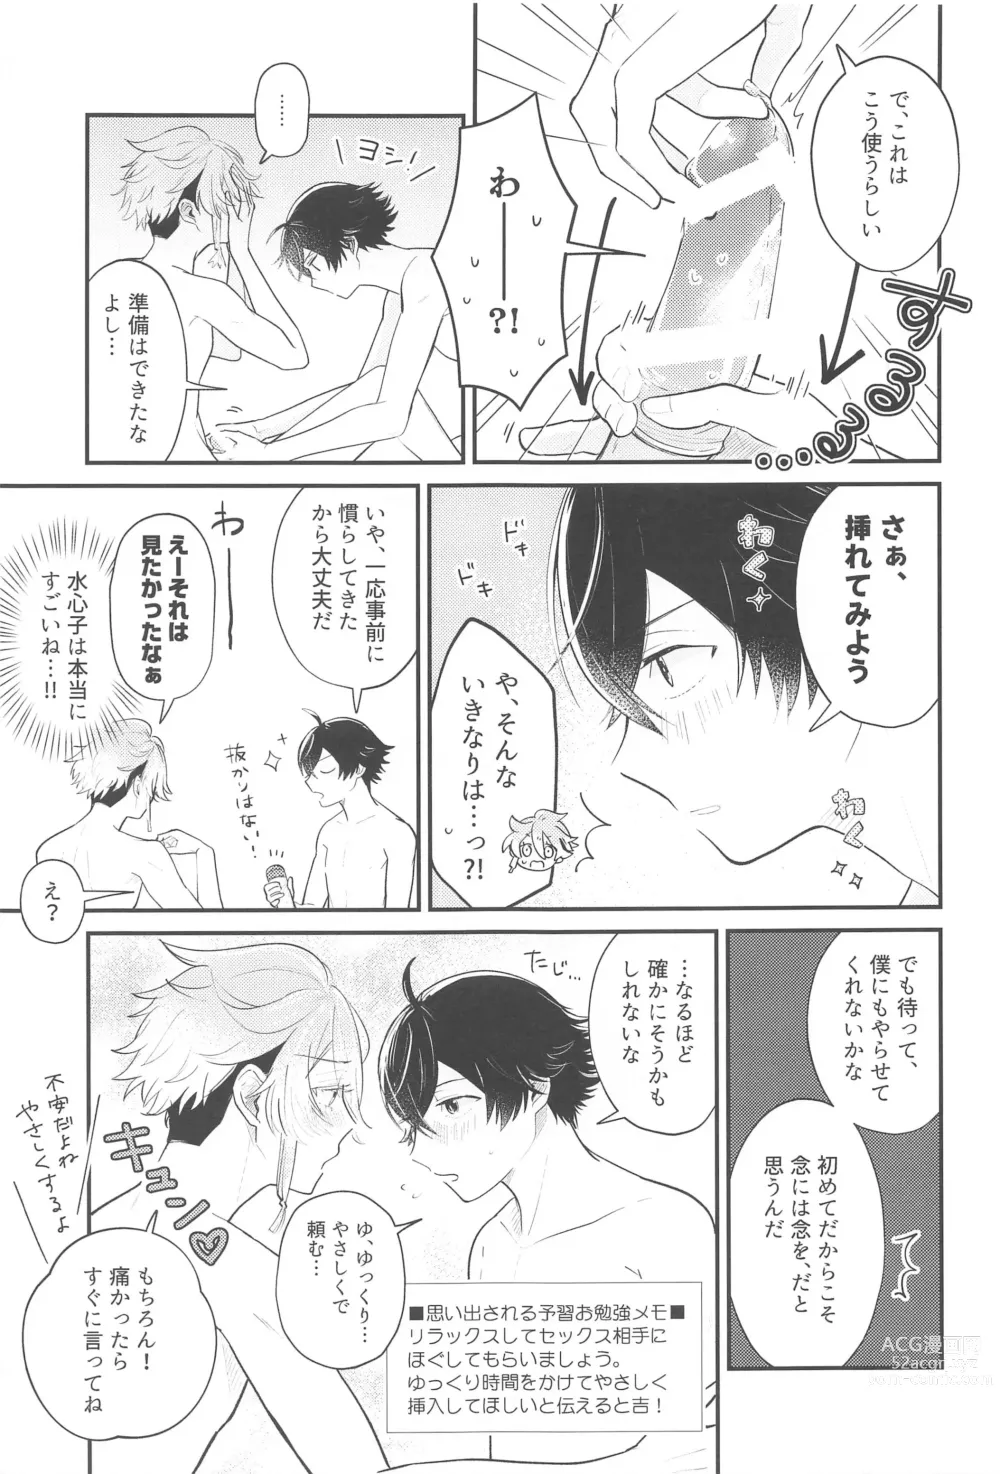 Page 14 of doujinshi Sonosaki wa Ariarito